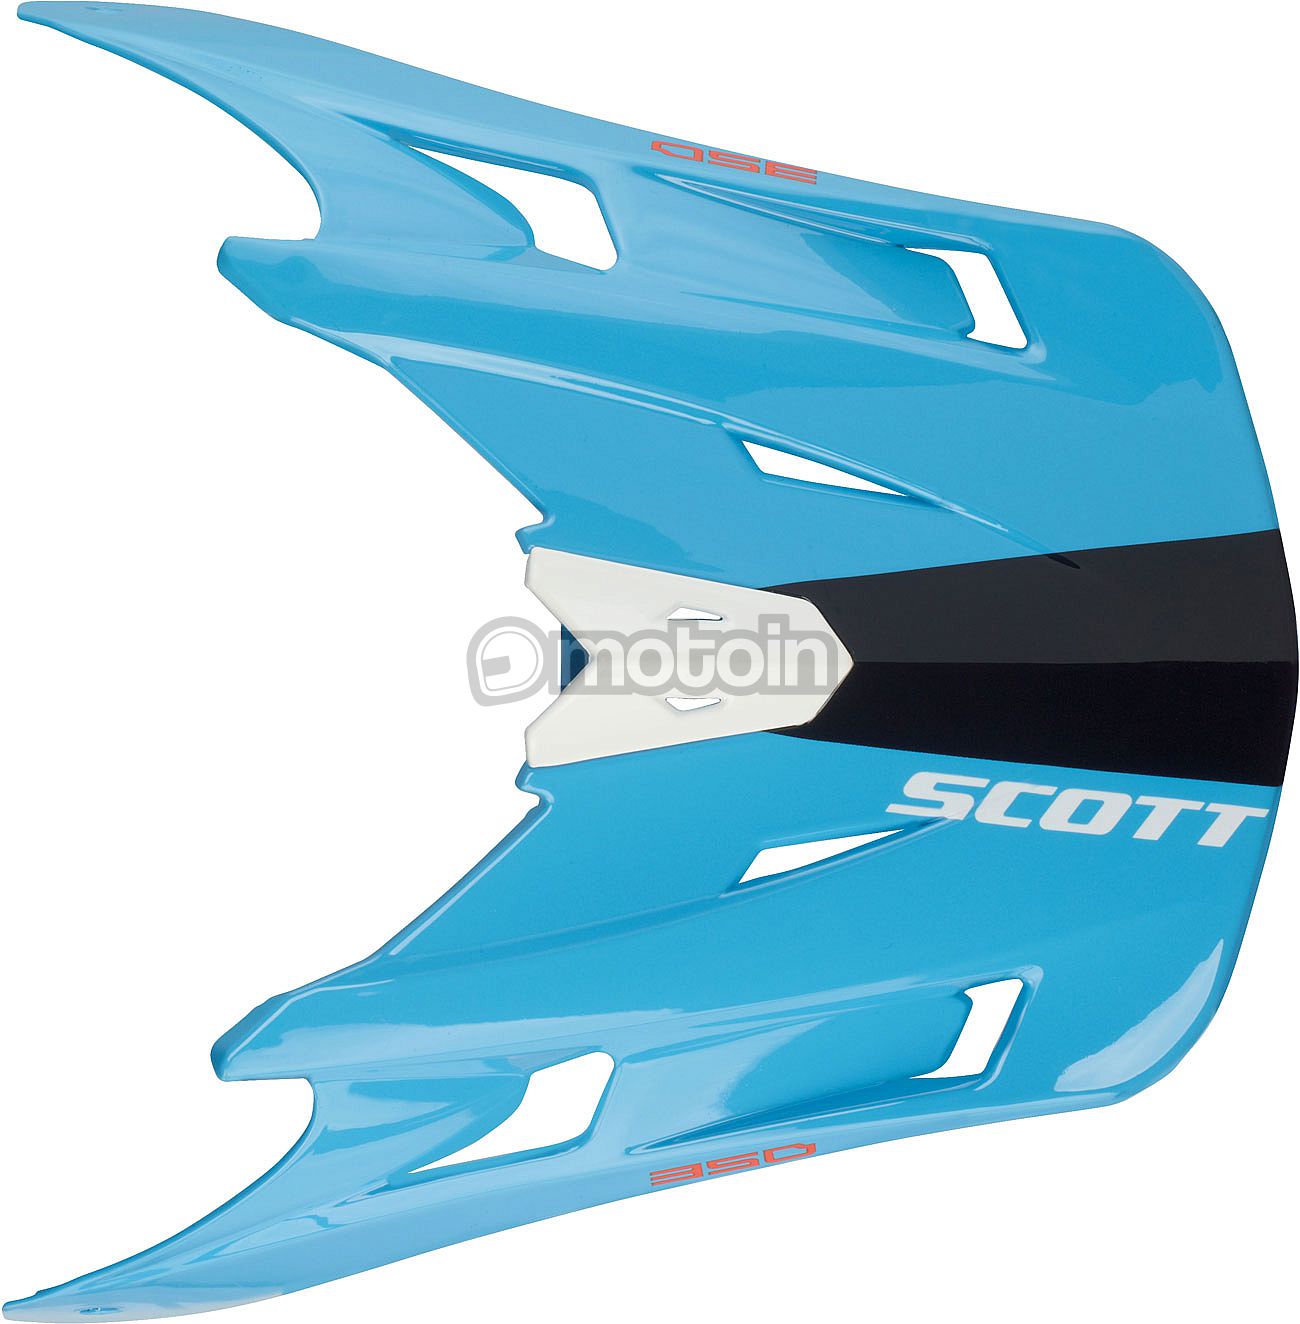 Scott 350 Race, peak kids